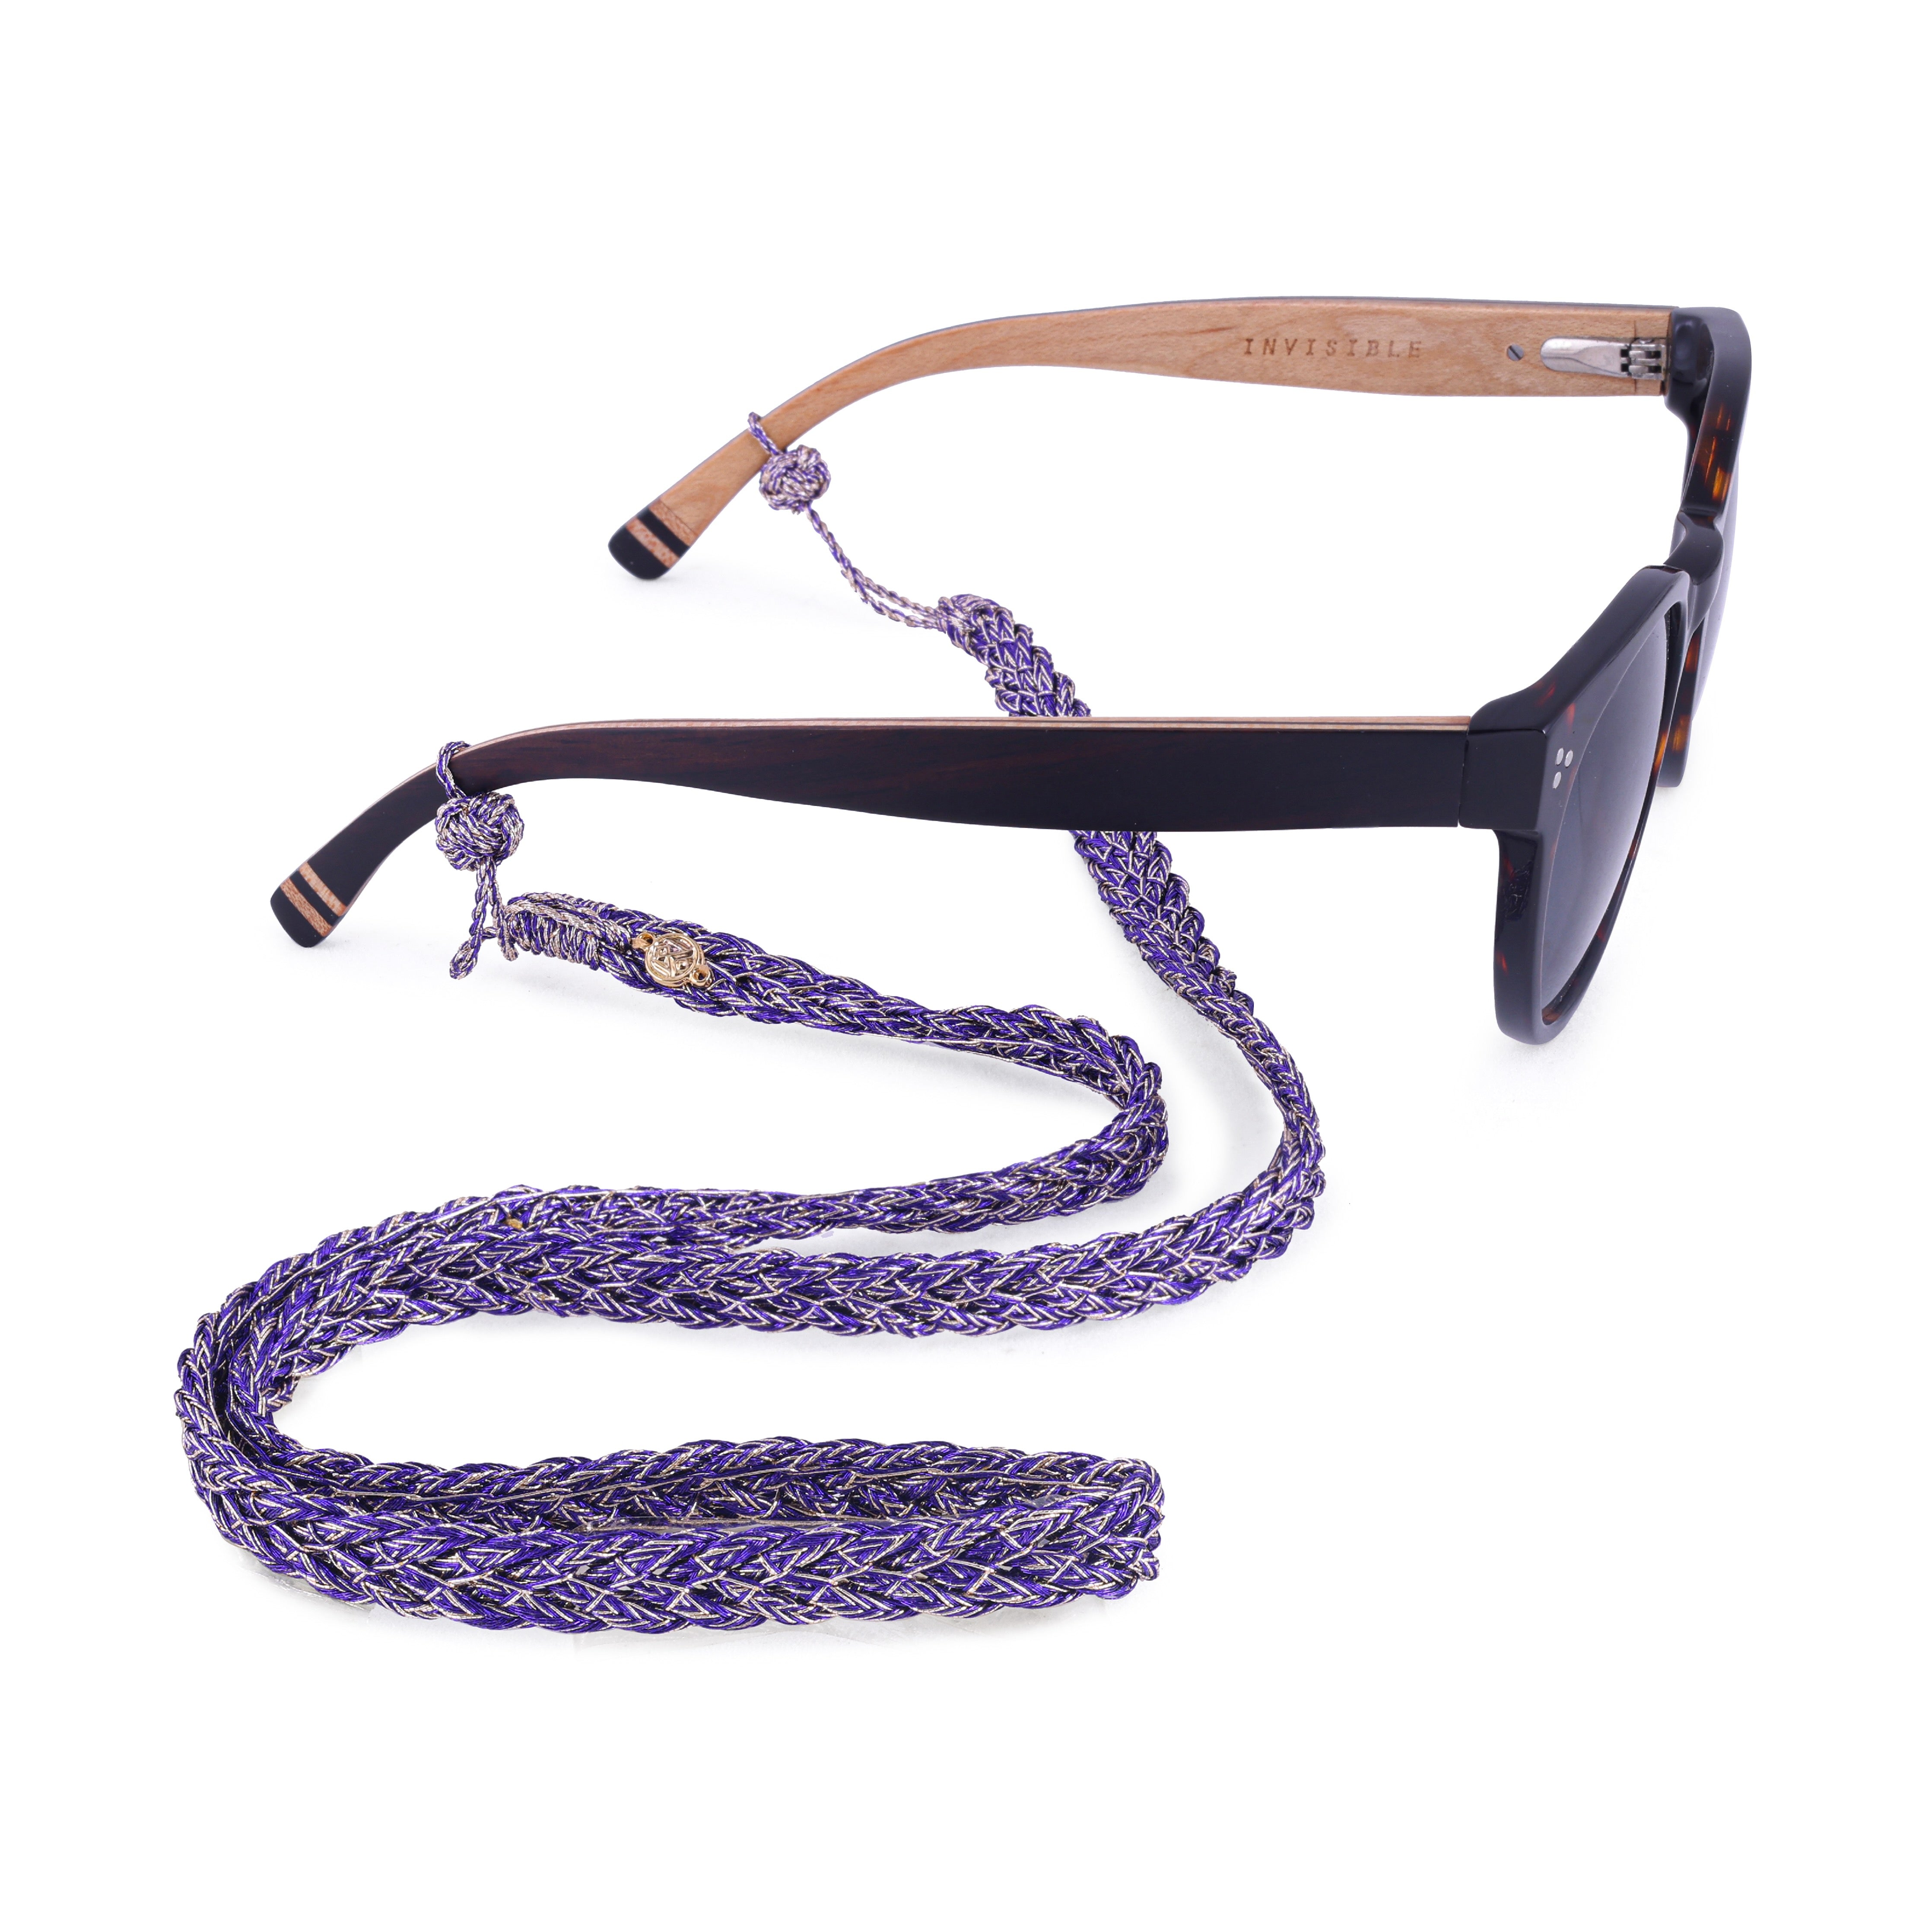 Maxi Braided Glasses Strap in Bright Purple